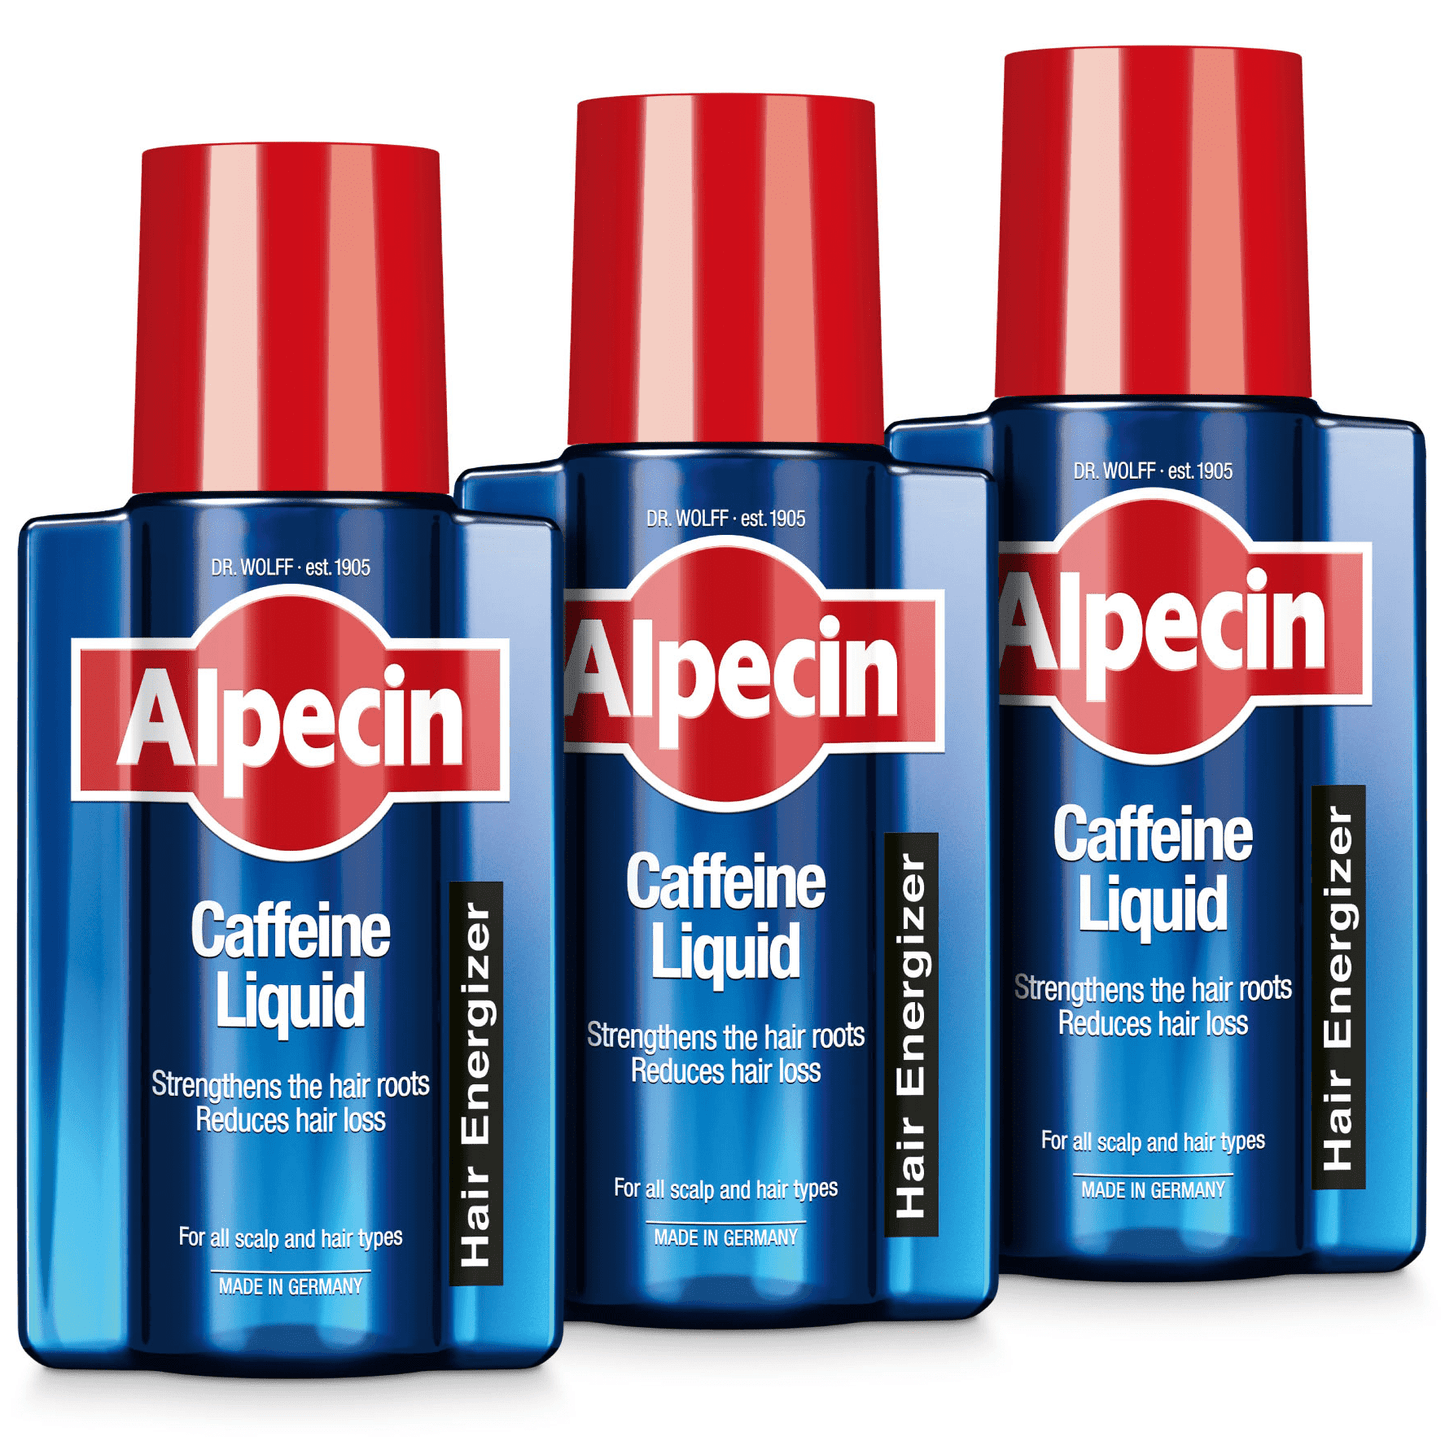 Alpecin Caffeine Liquid Hair Tonic